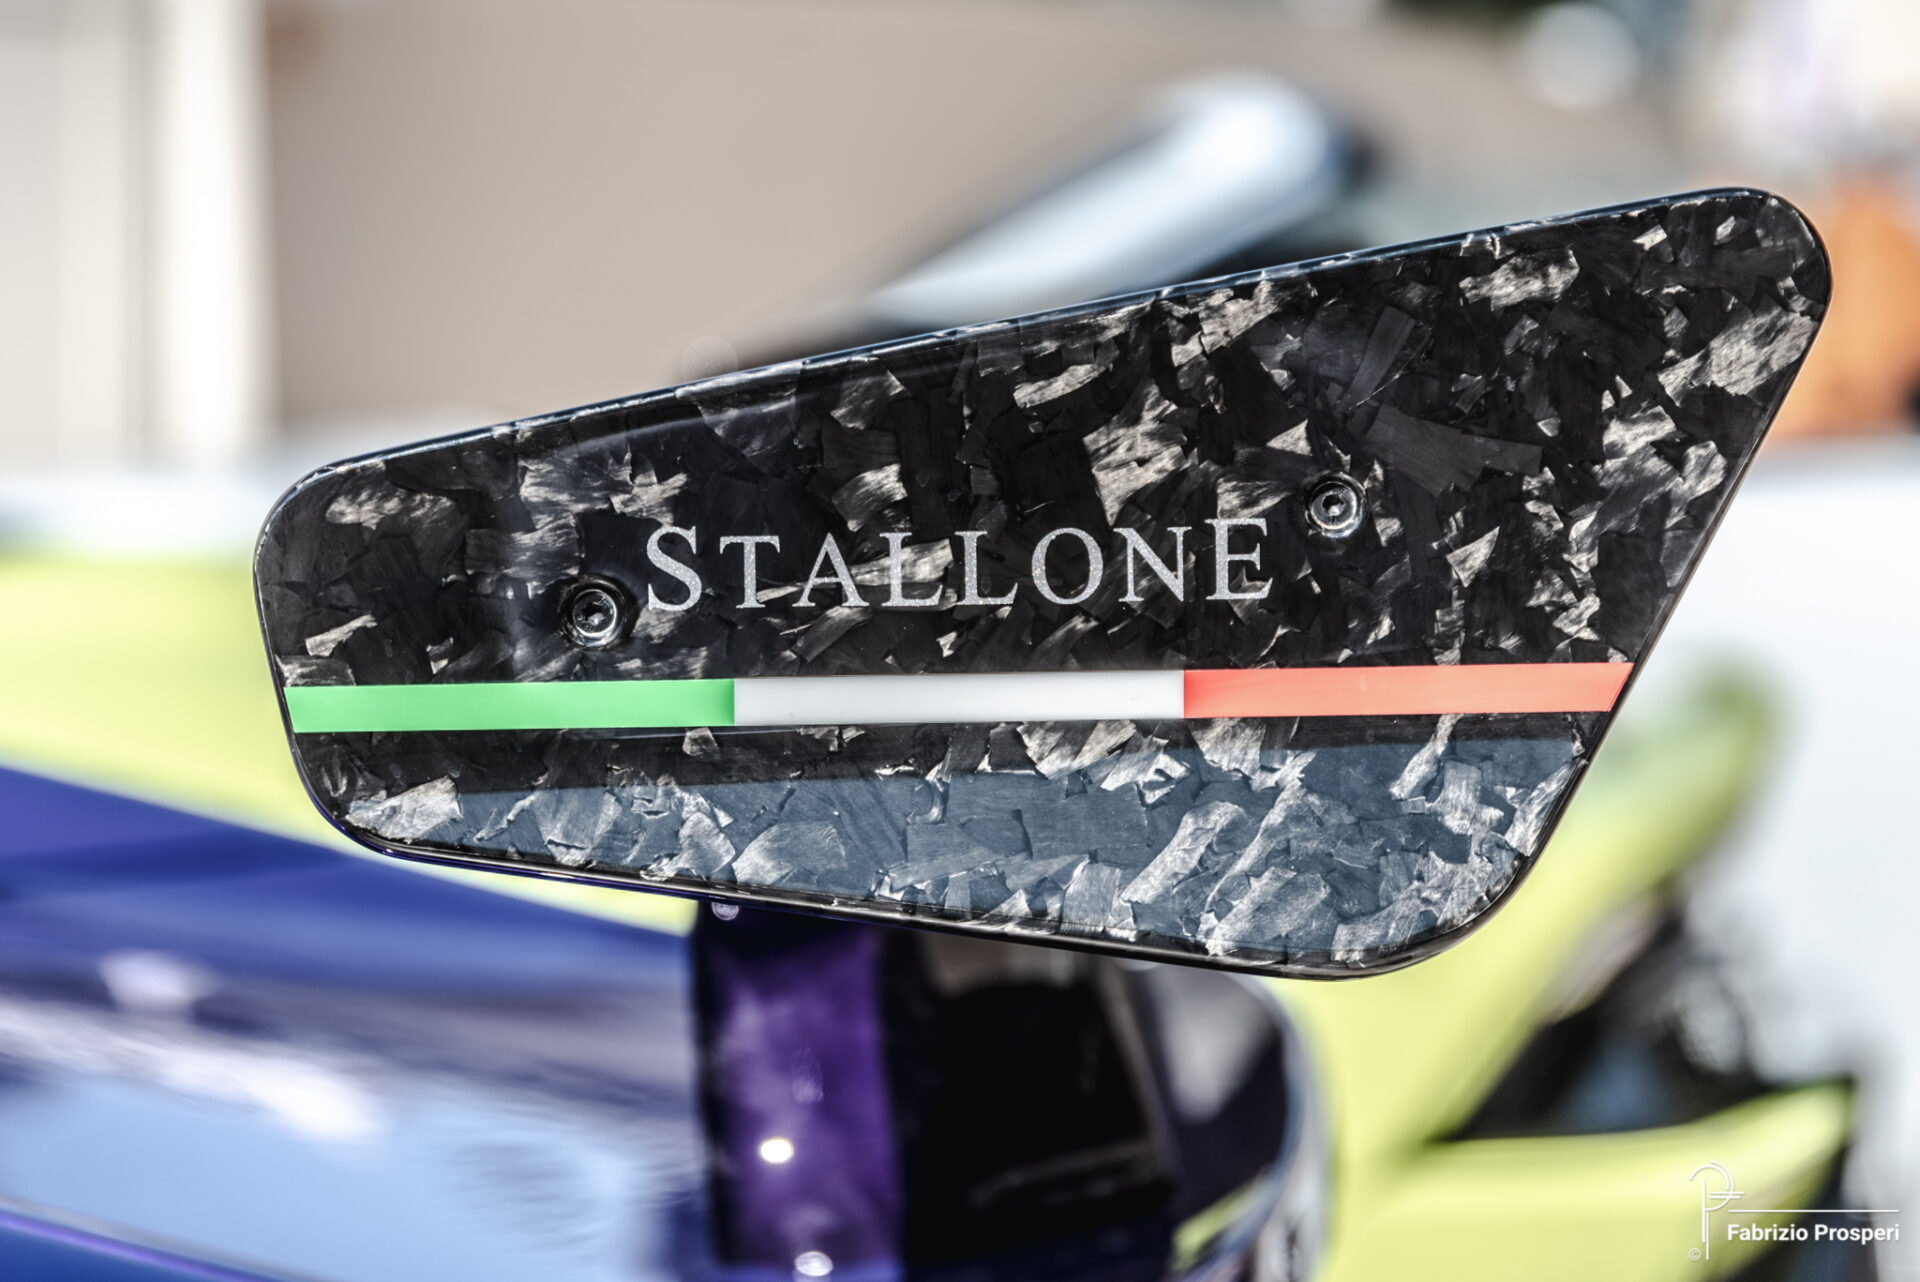 Mansory Stallone 812 GTS